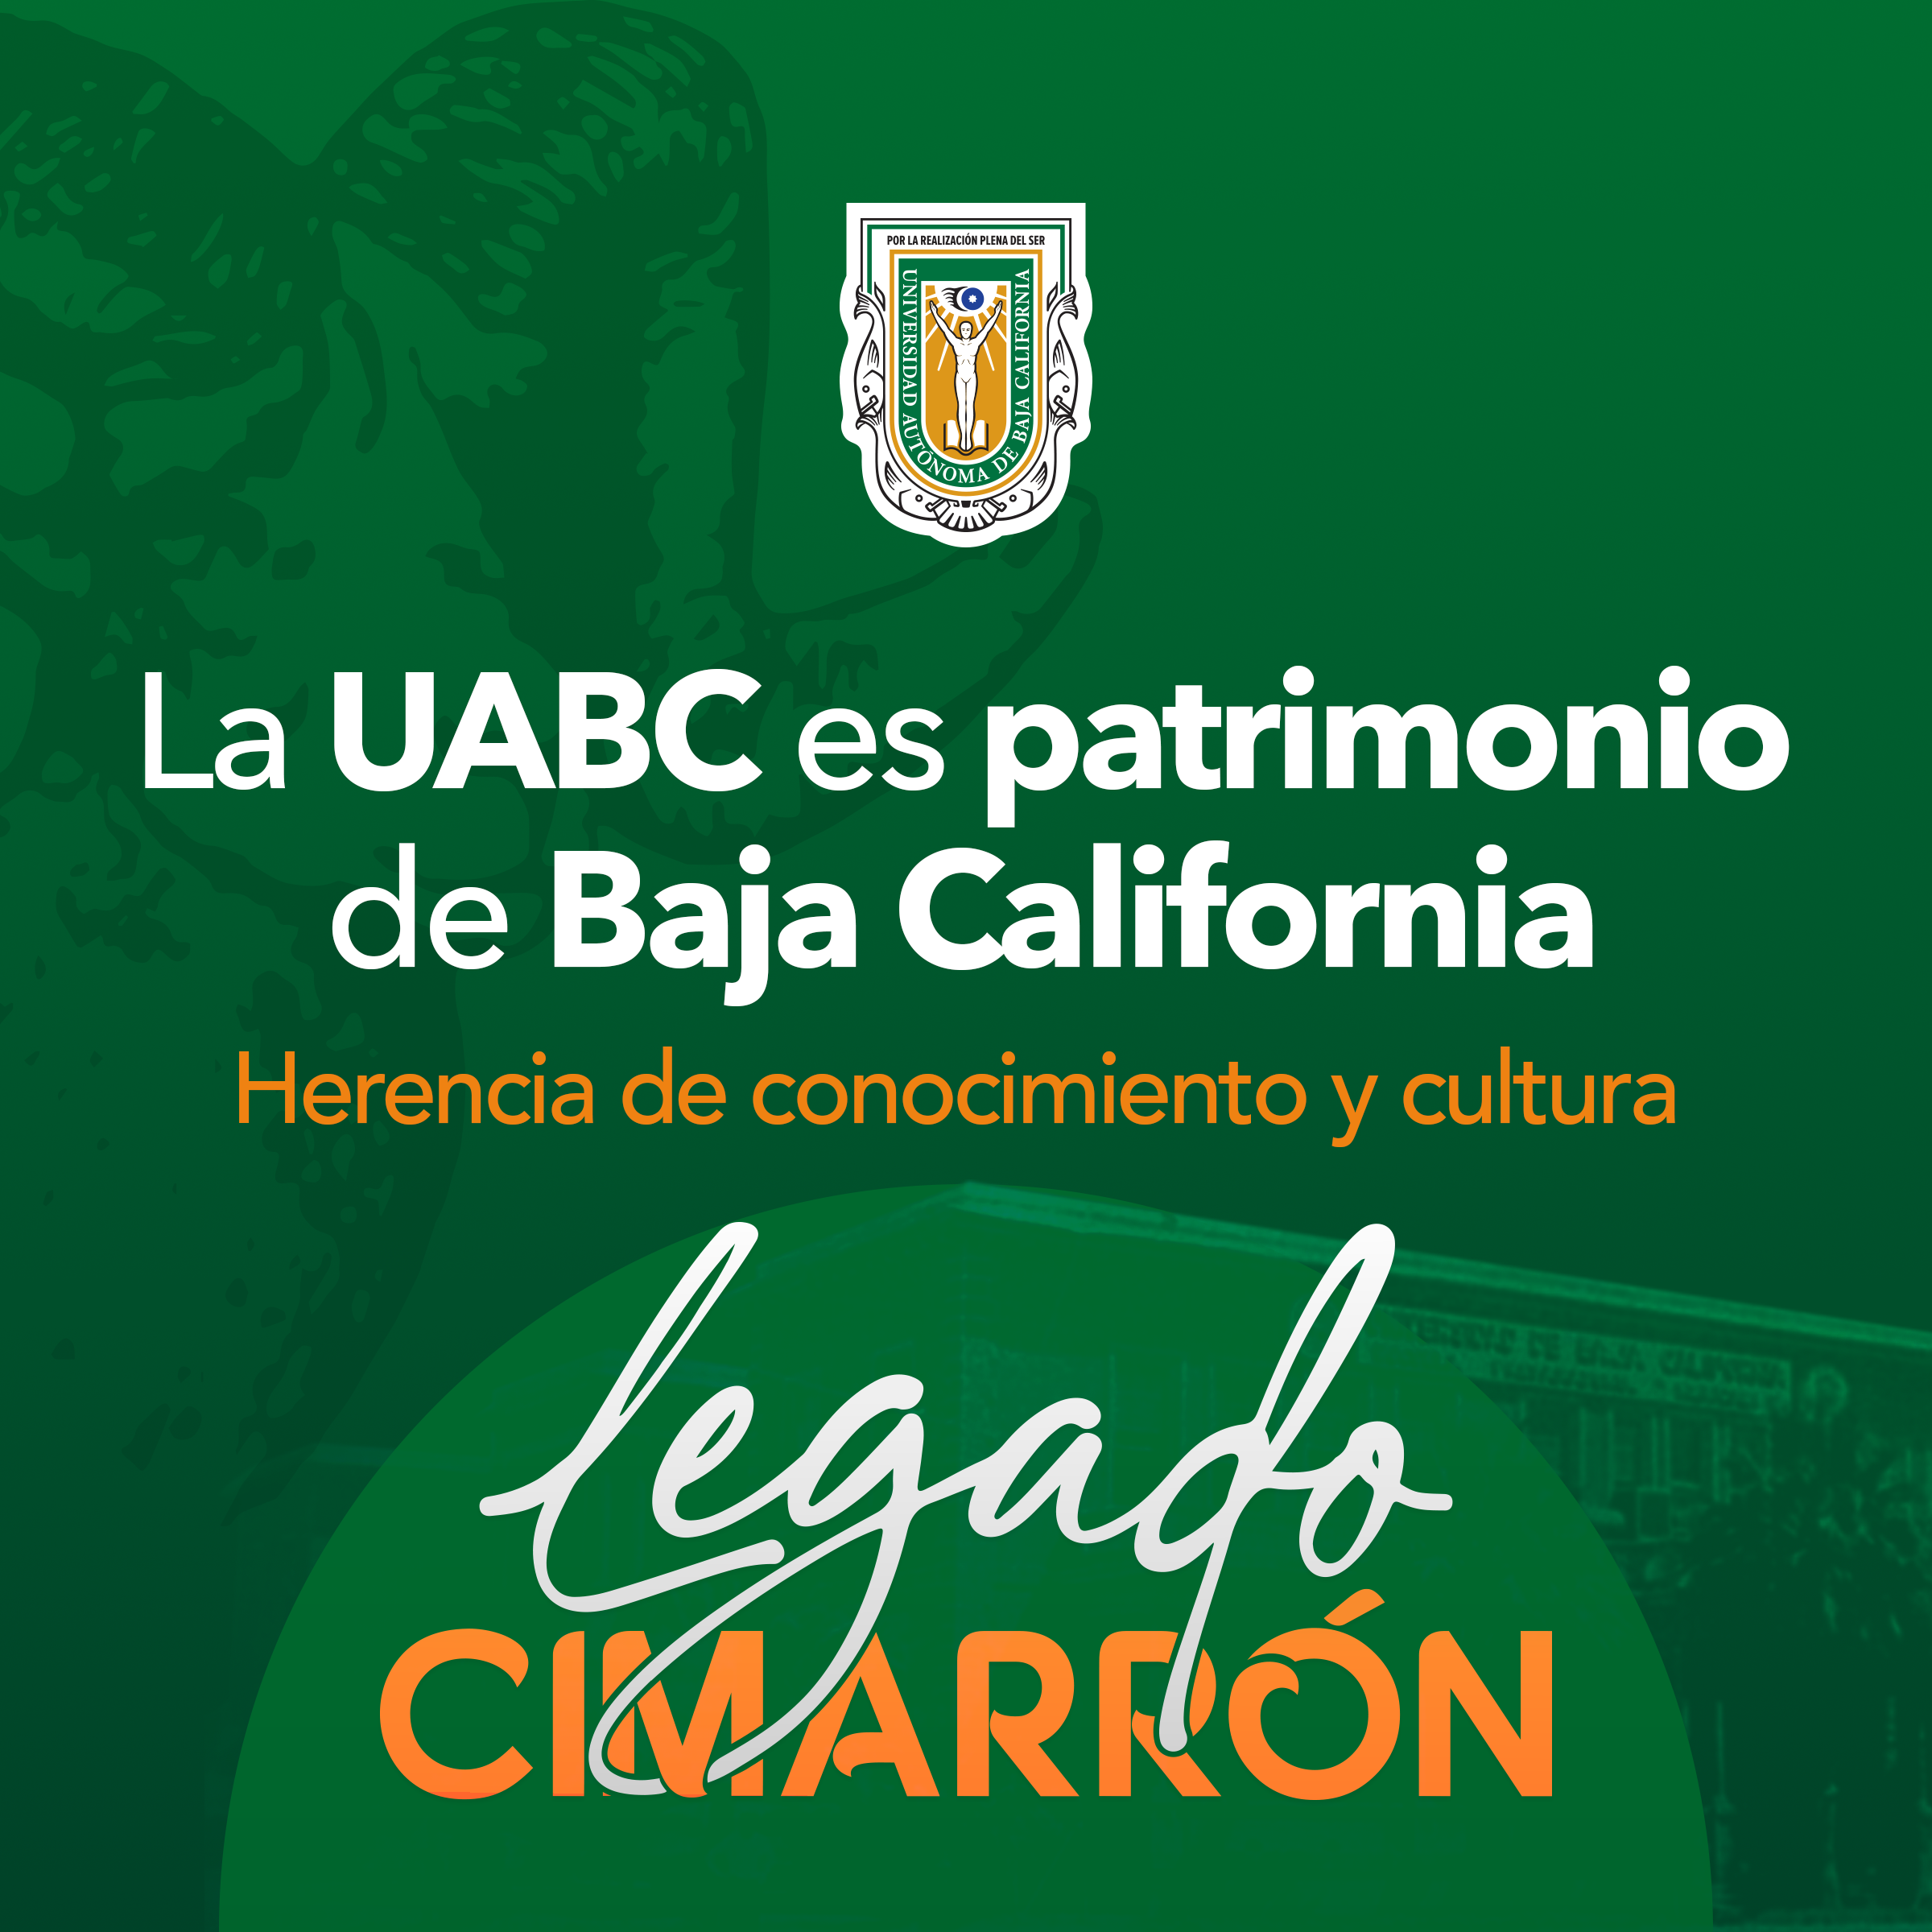 La UABC es patrimodio de Baja California, Legado Cimarrón